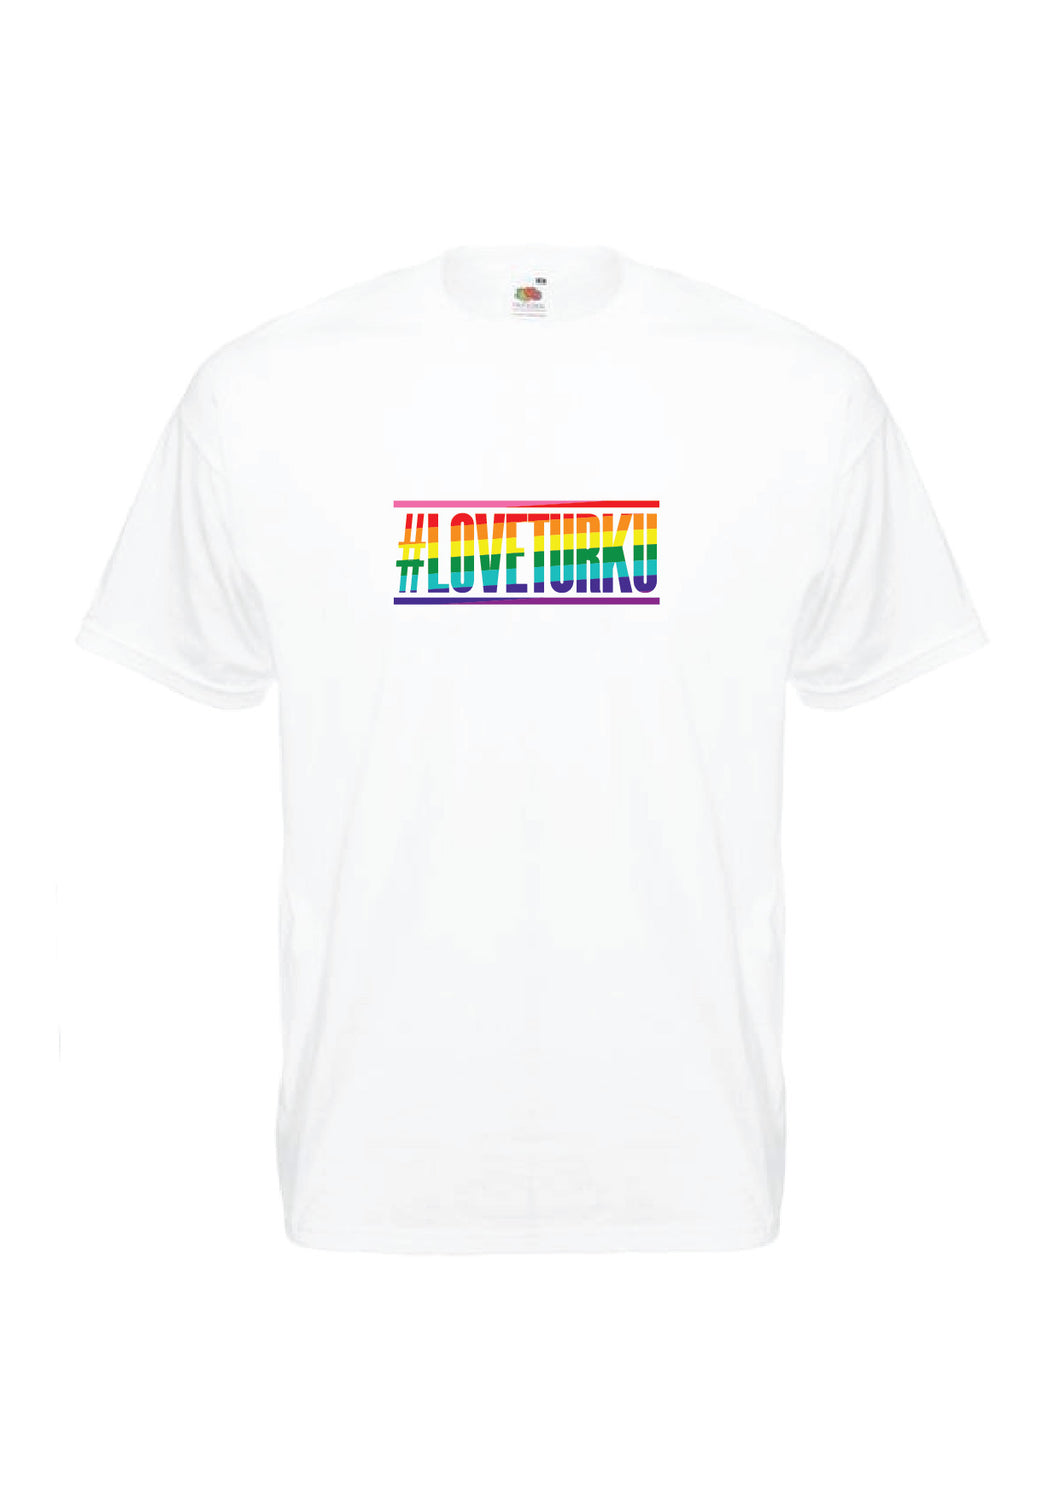 LoveTurku t-paita valkoinen, sateenkaarilogo